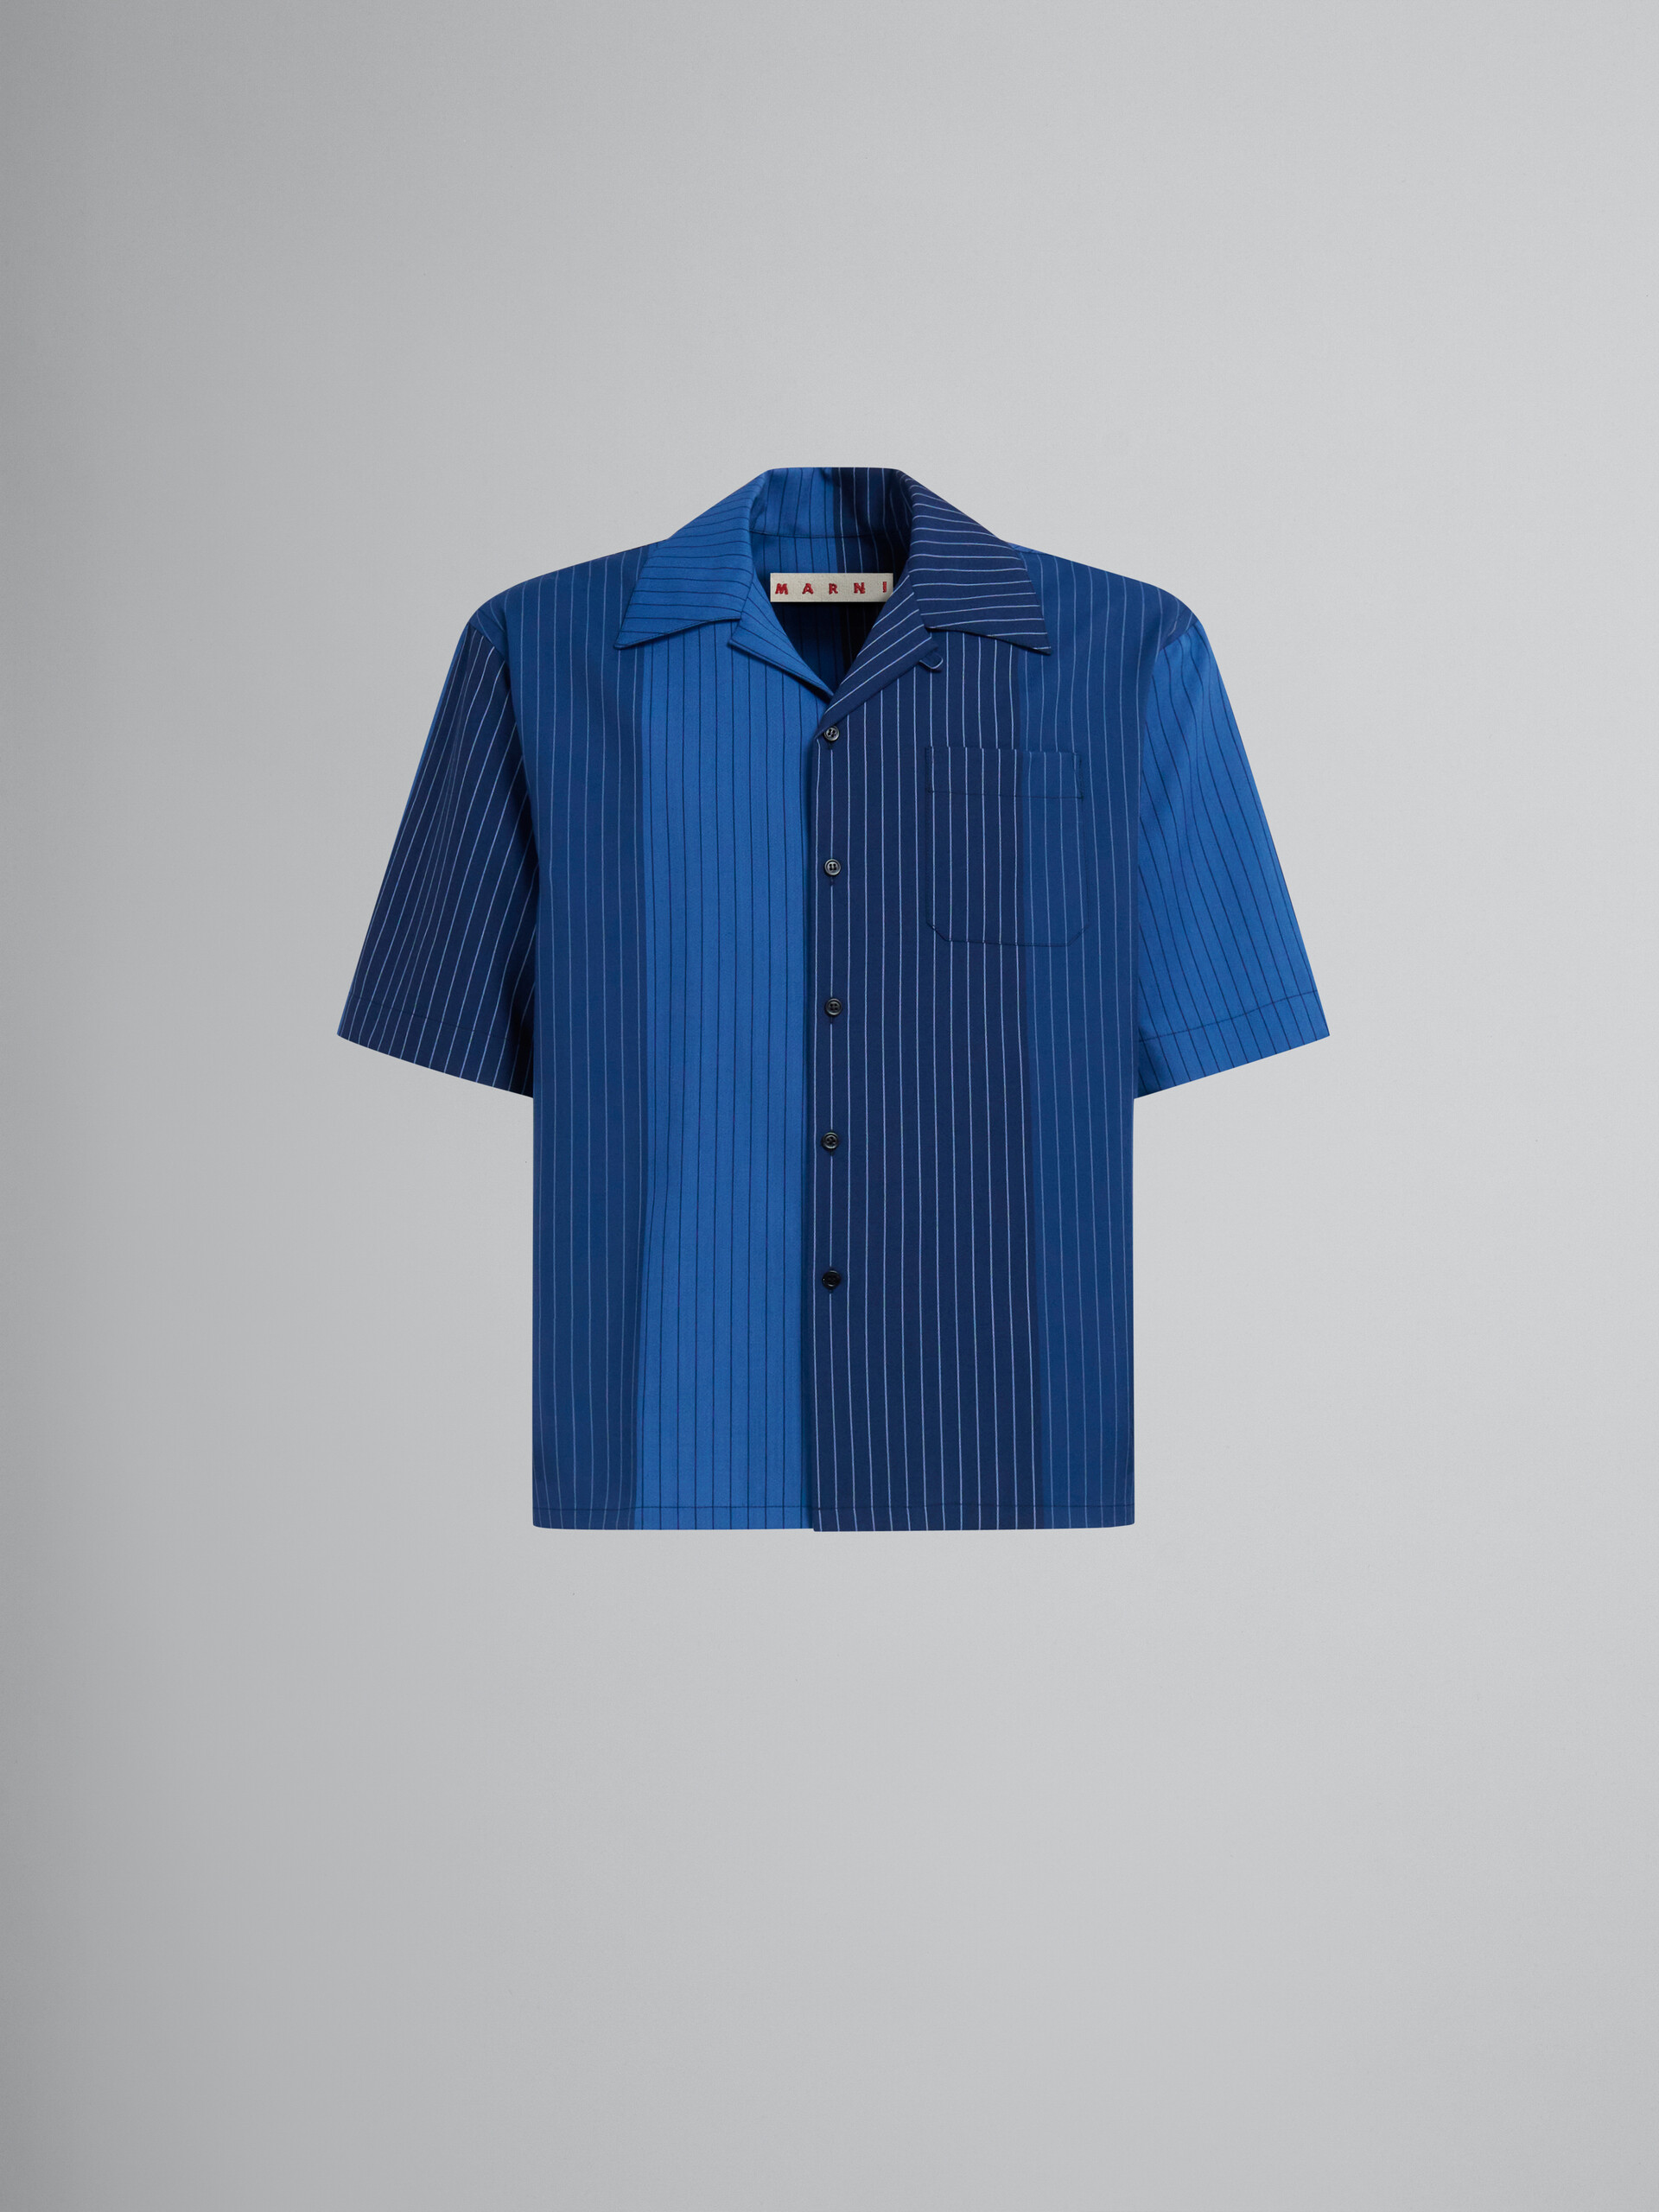 Blue dégradé pinstripe wool bowling shirt - Shirts - Image 1